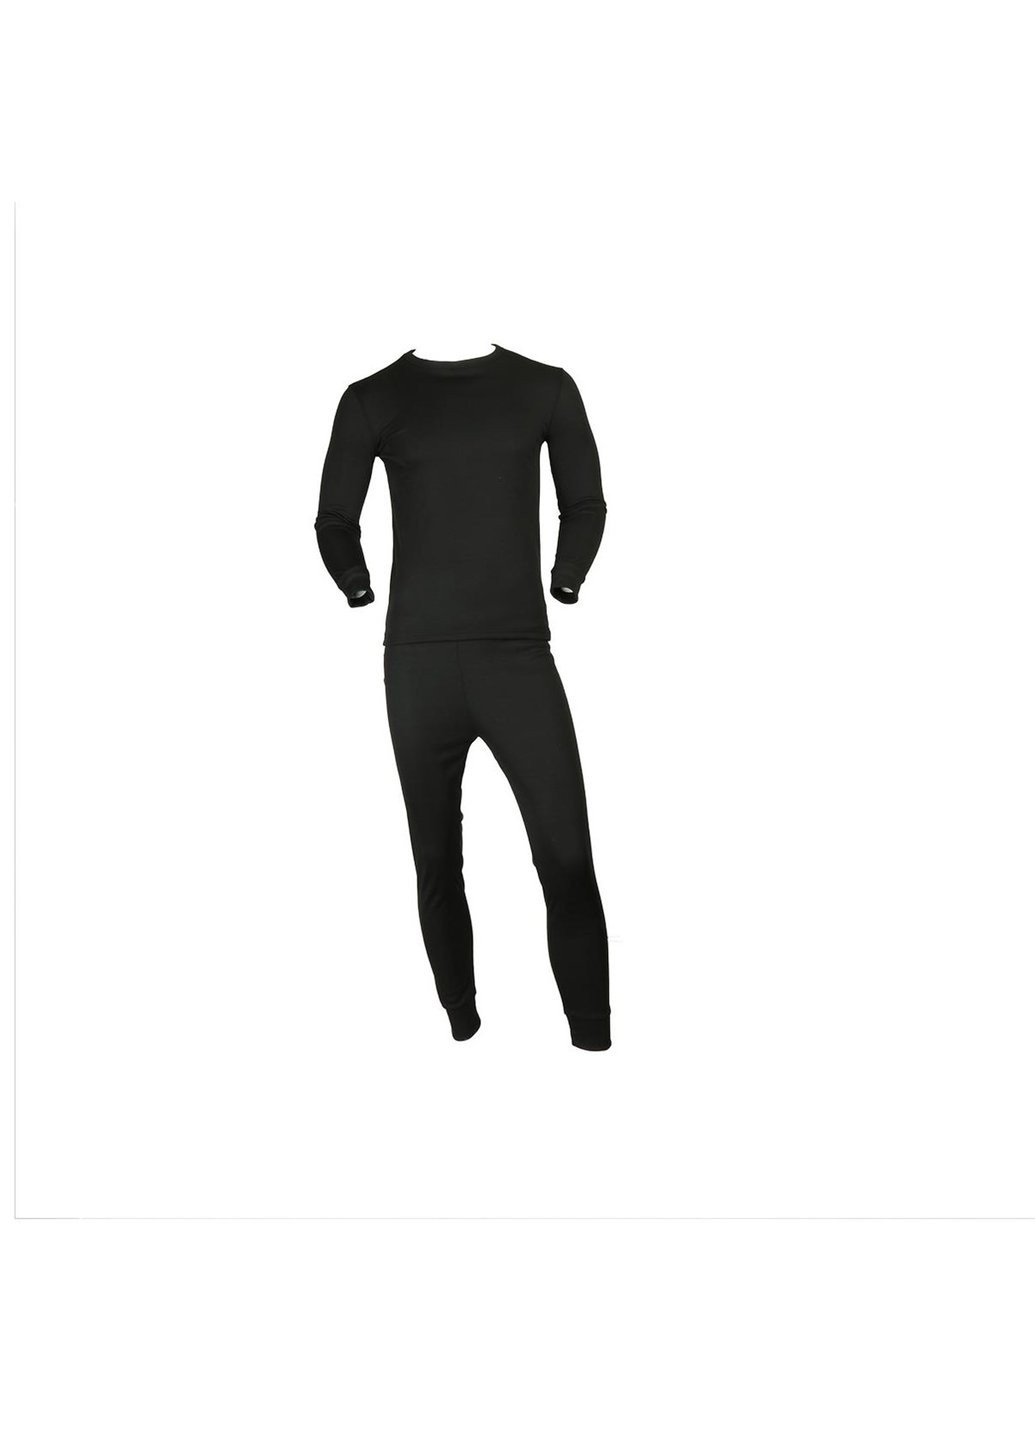 Черный летний термобелье мужское костюм gumus турция xxl 8114 черное Power